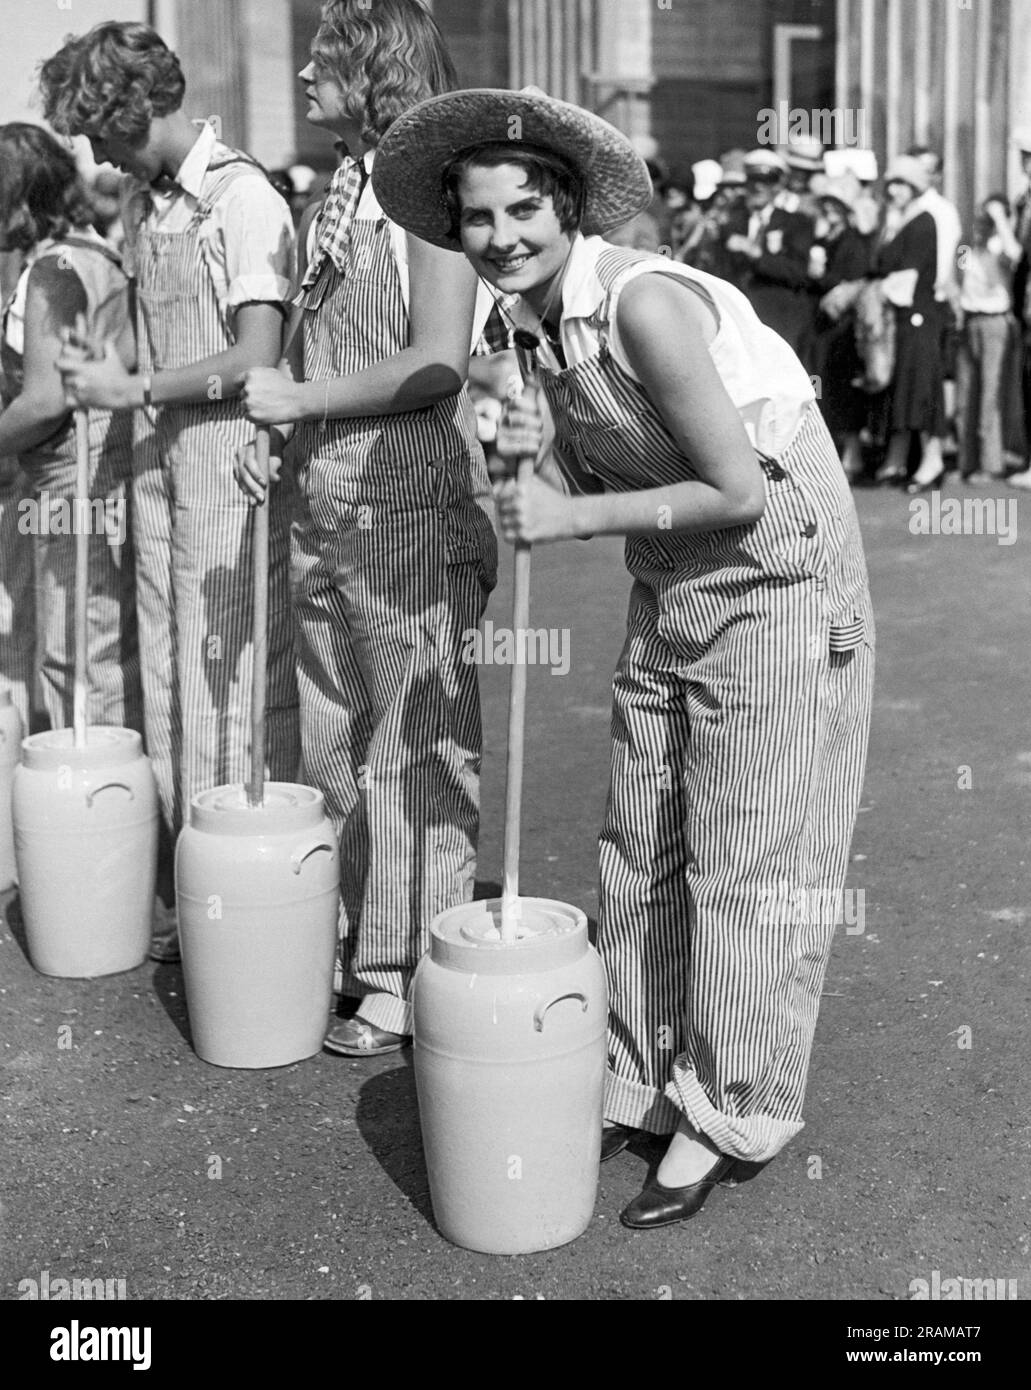 Pomona, Kalifornien: c. 1930 Lucille Gates ist dieses Jahr Gewinner der American Farm Girl Championships, die auf der Los Angeles County Fair stattfinden. Hier ist sie in Aktion während der Butter-Churning-Veranstaltung. Stockfoto